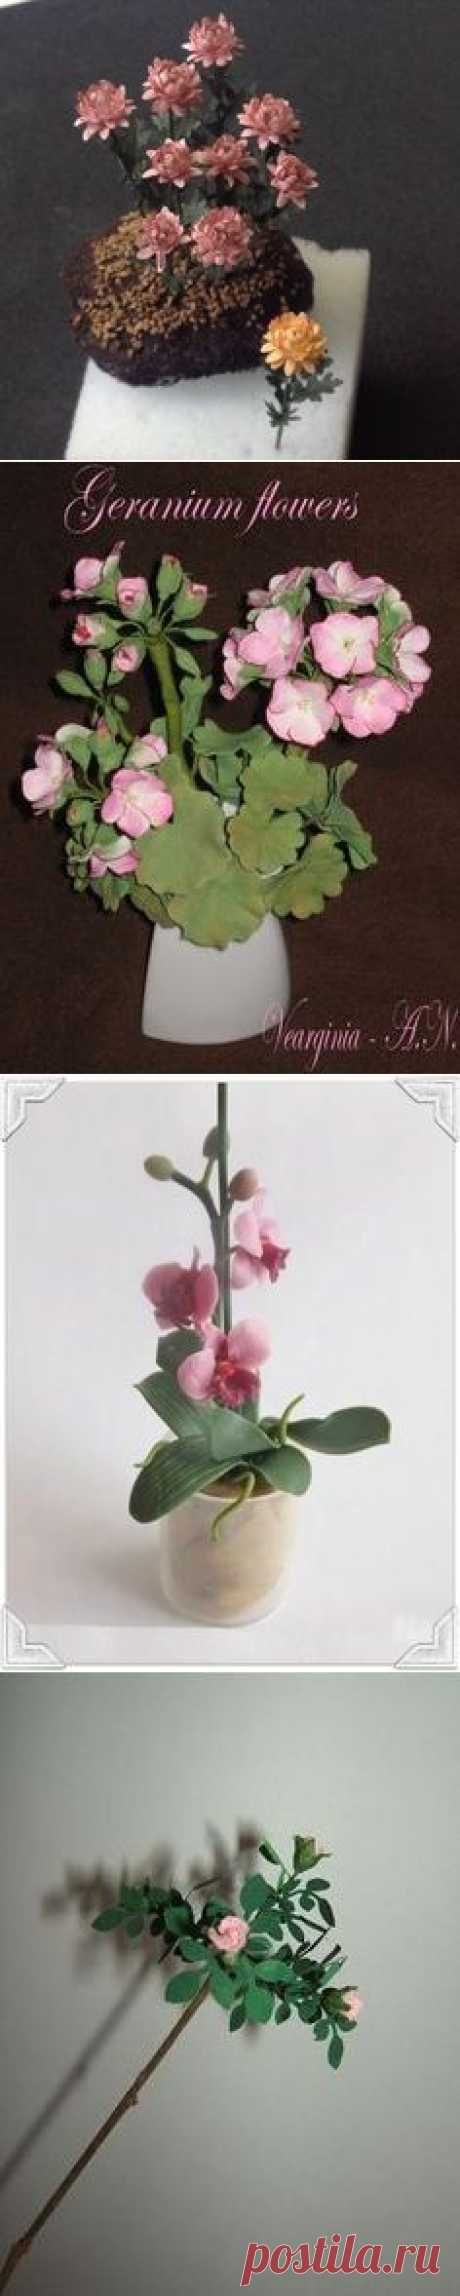 (18) Miniature Tutorials - Flowers &amp; Plants в Pinterest | Кукольные Дома, Квиллинг и Бумажные Розы